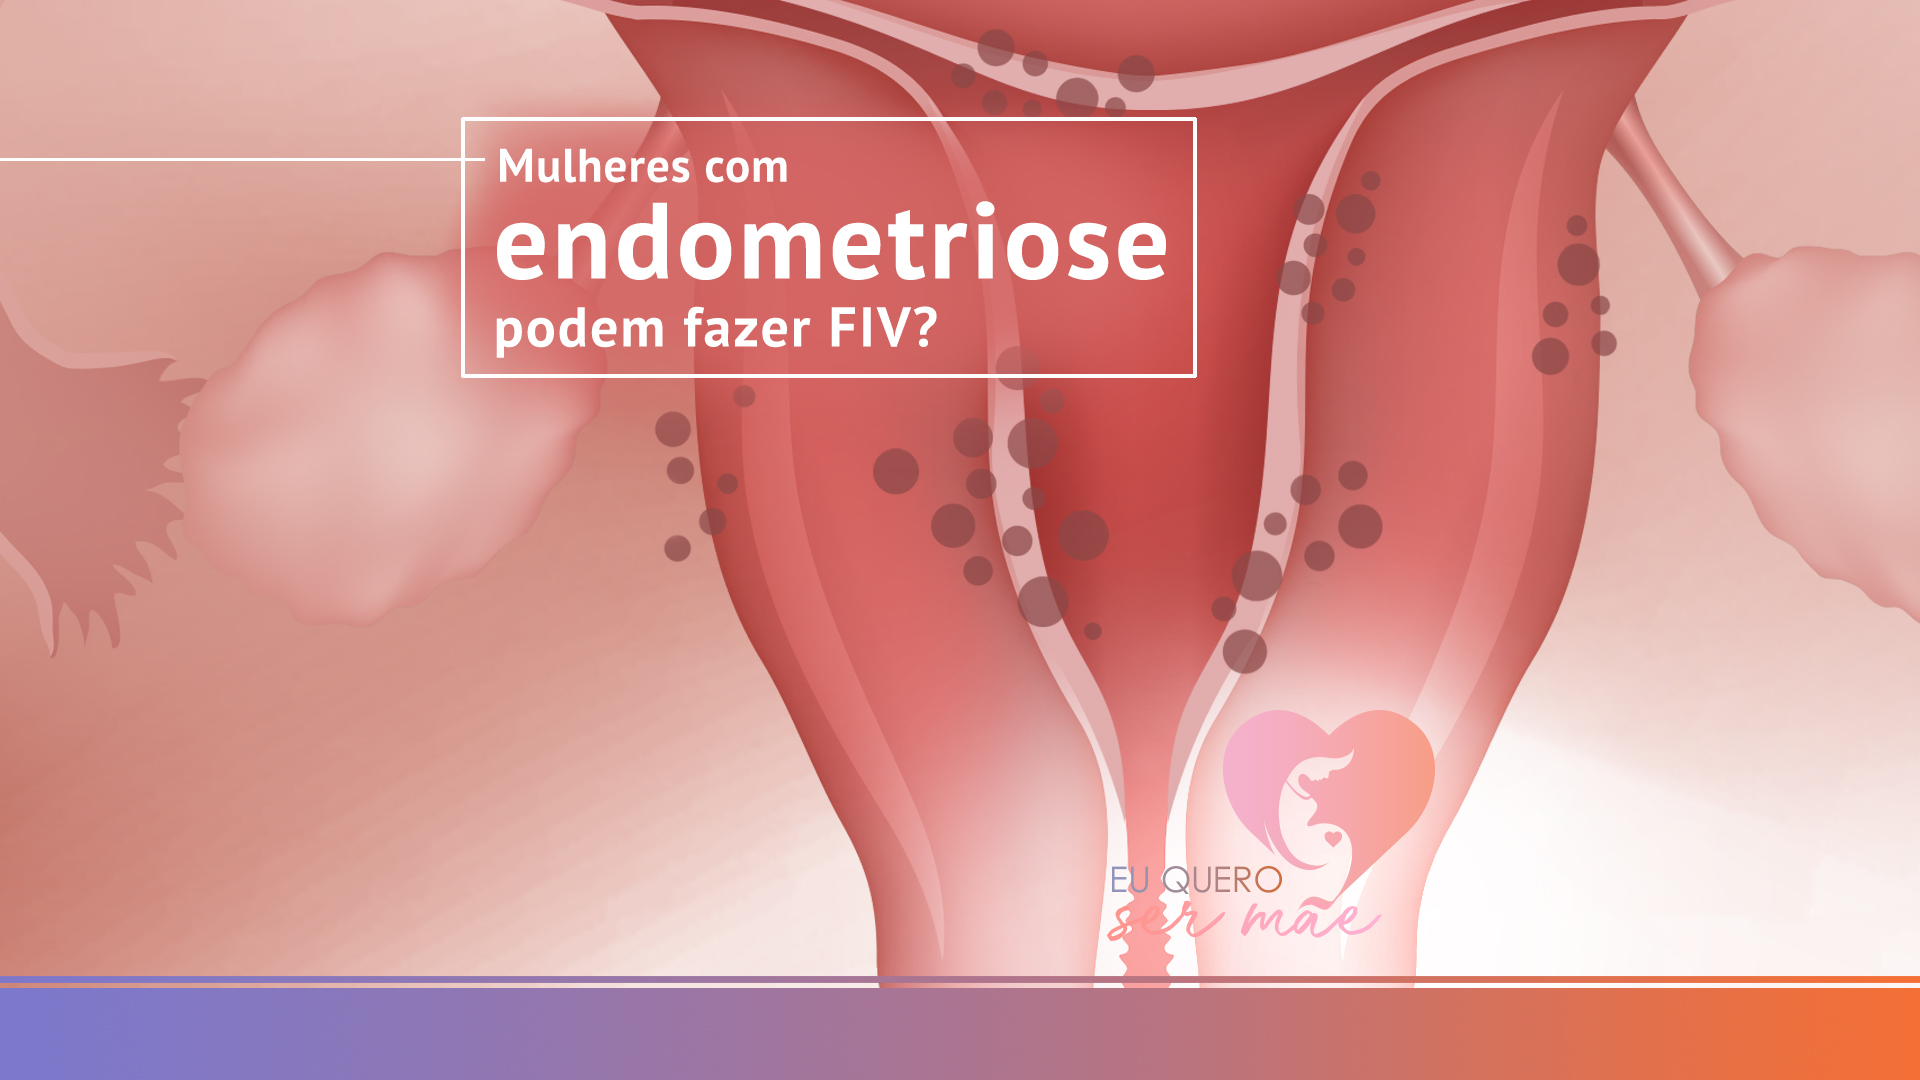 Mulheres com endometriose podem fazer FIV?